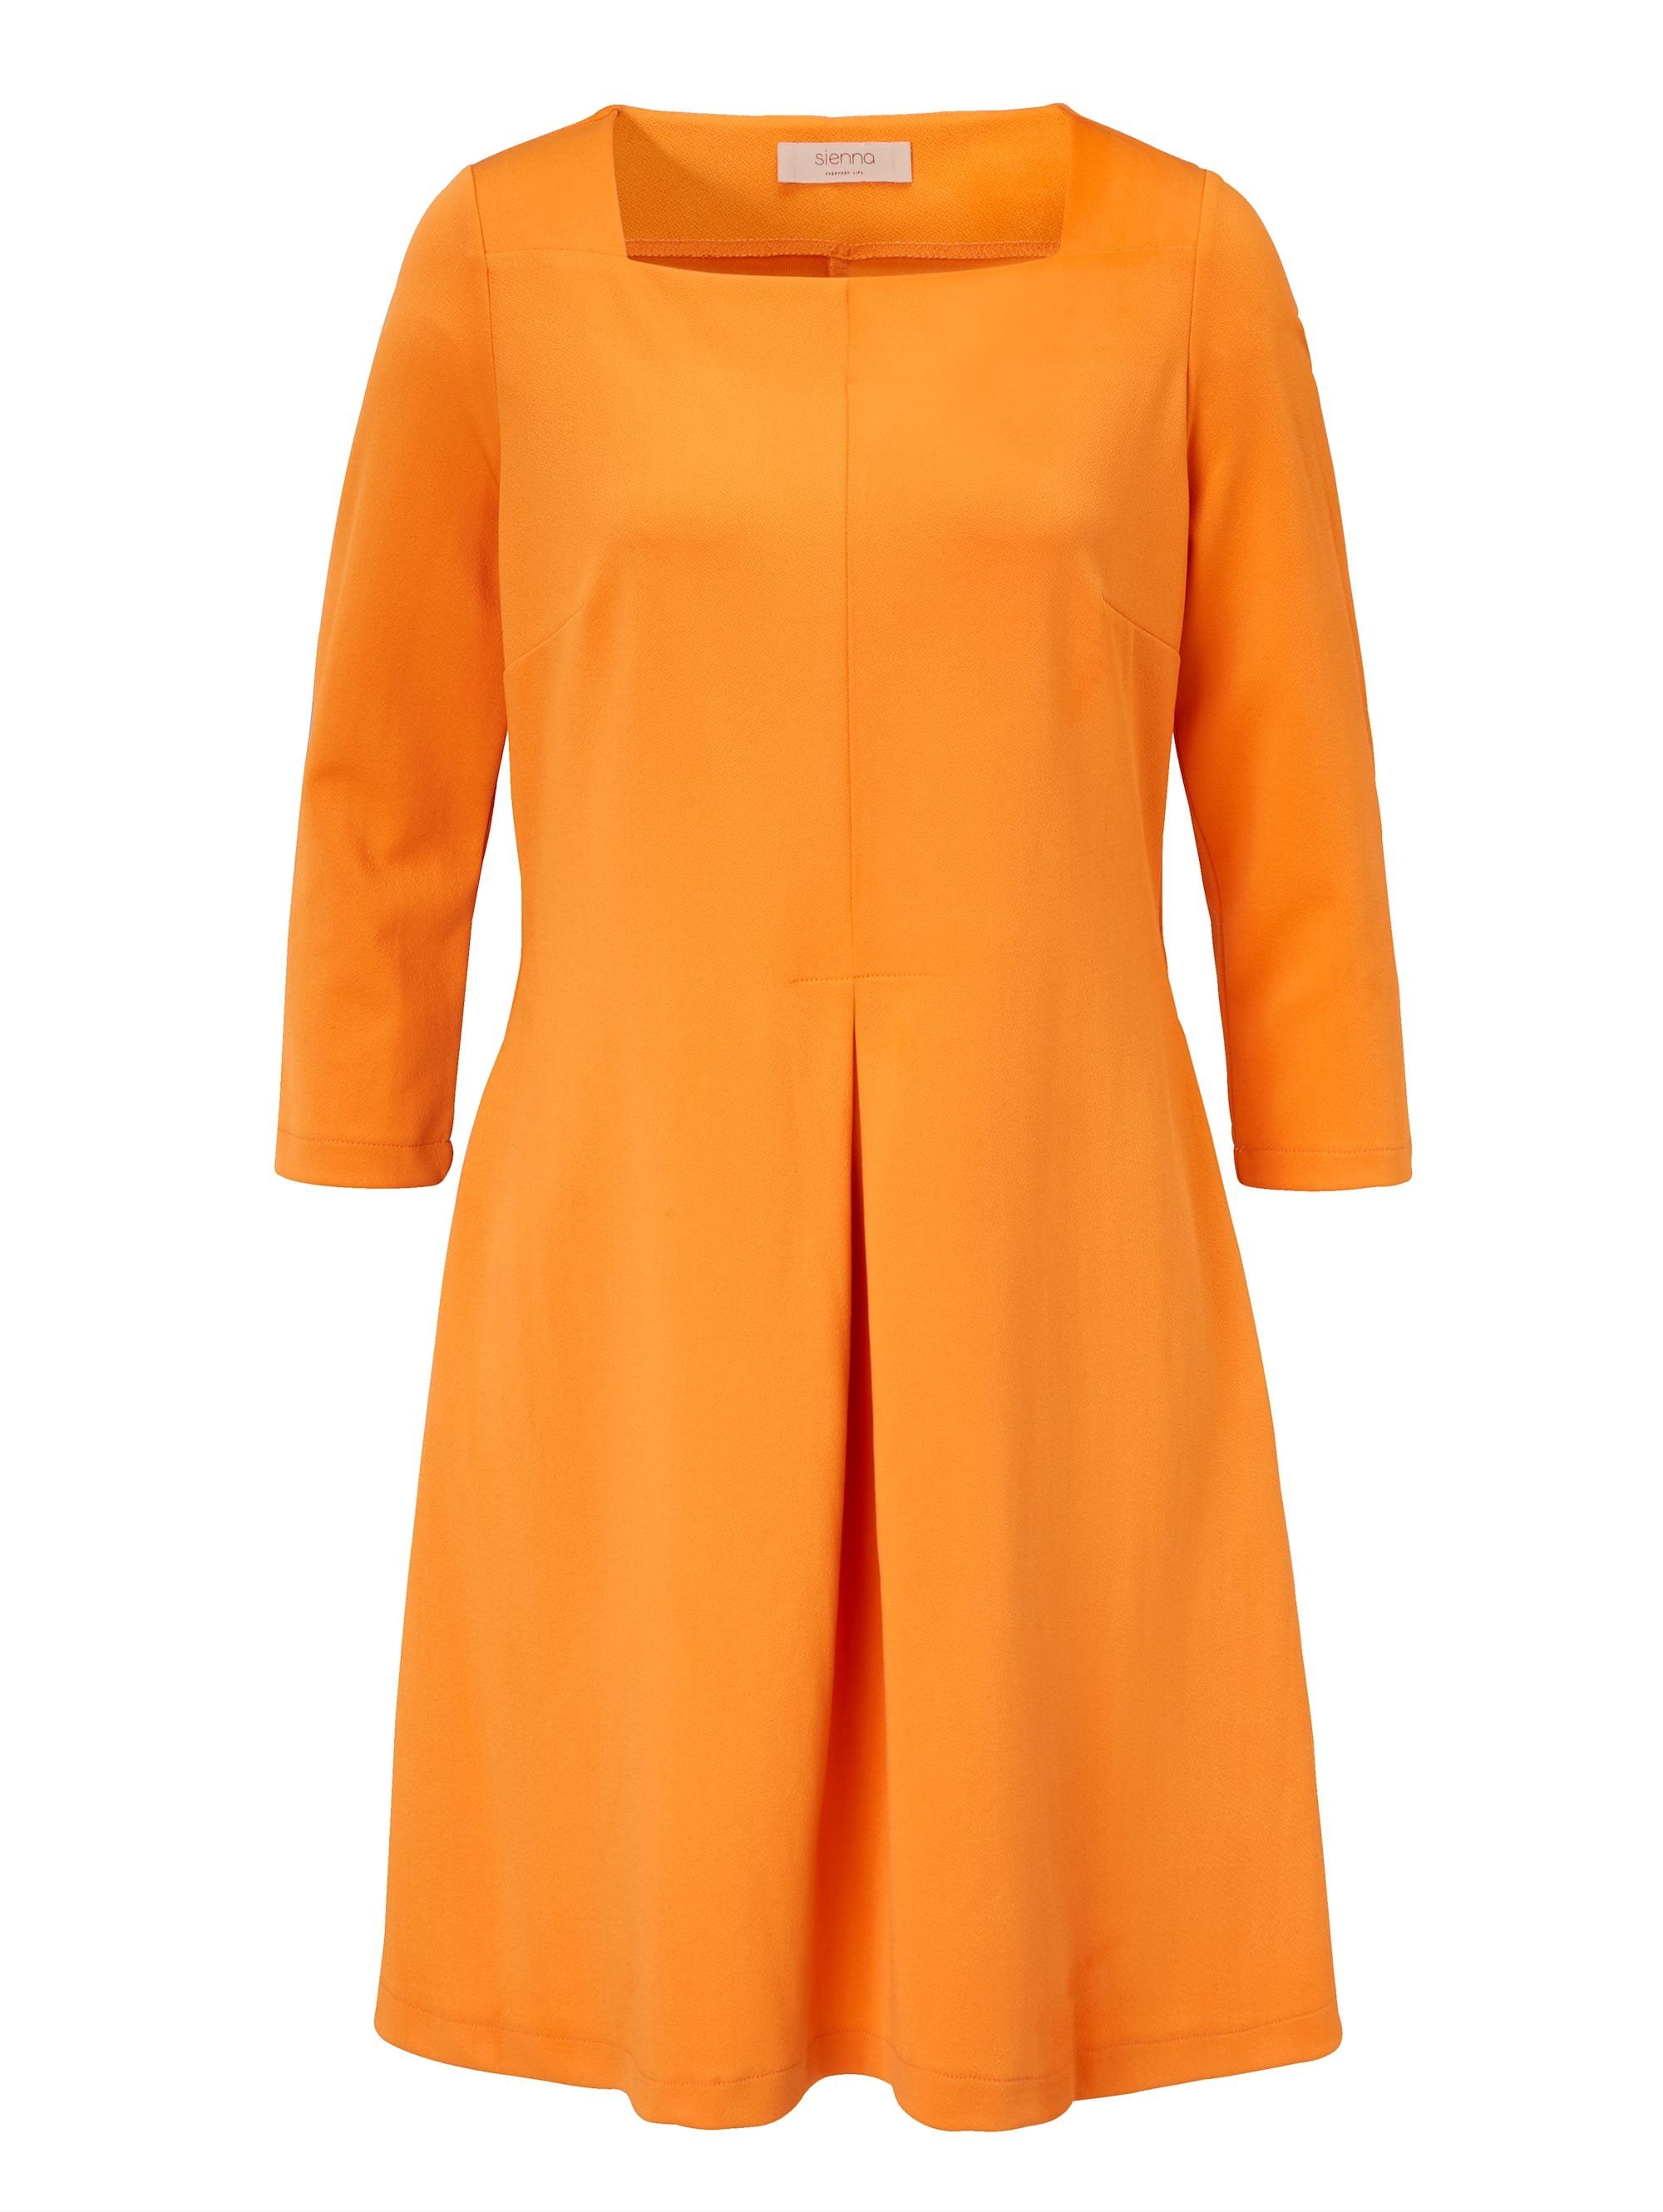 Sienna Kleid, Kleid mit Karree-Ausschnitt und großer Kellerfalte in vorder  online kaufen | OTTO